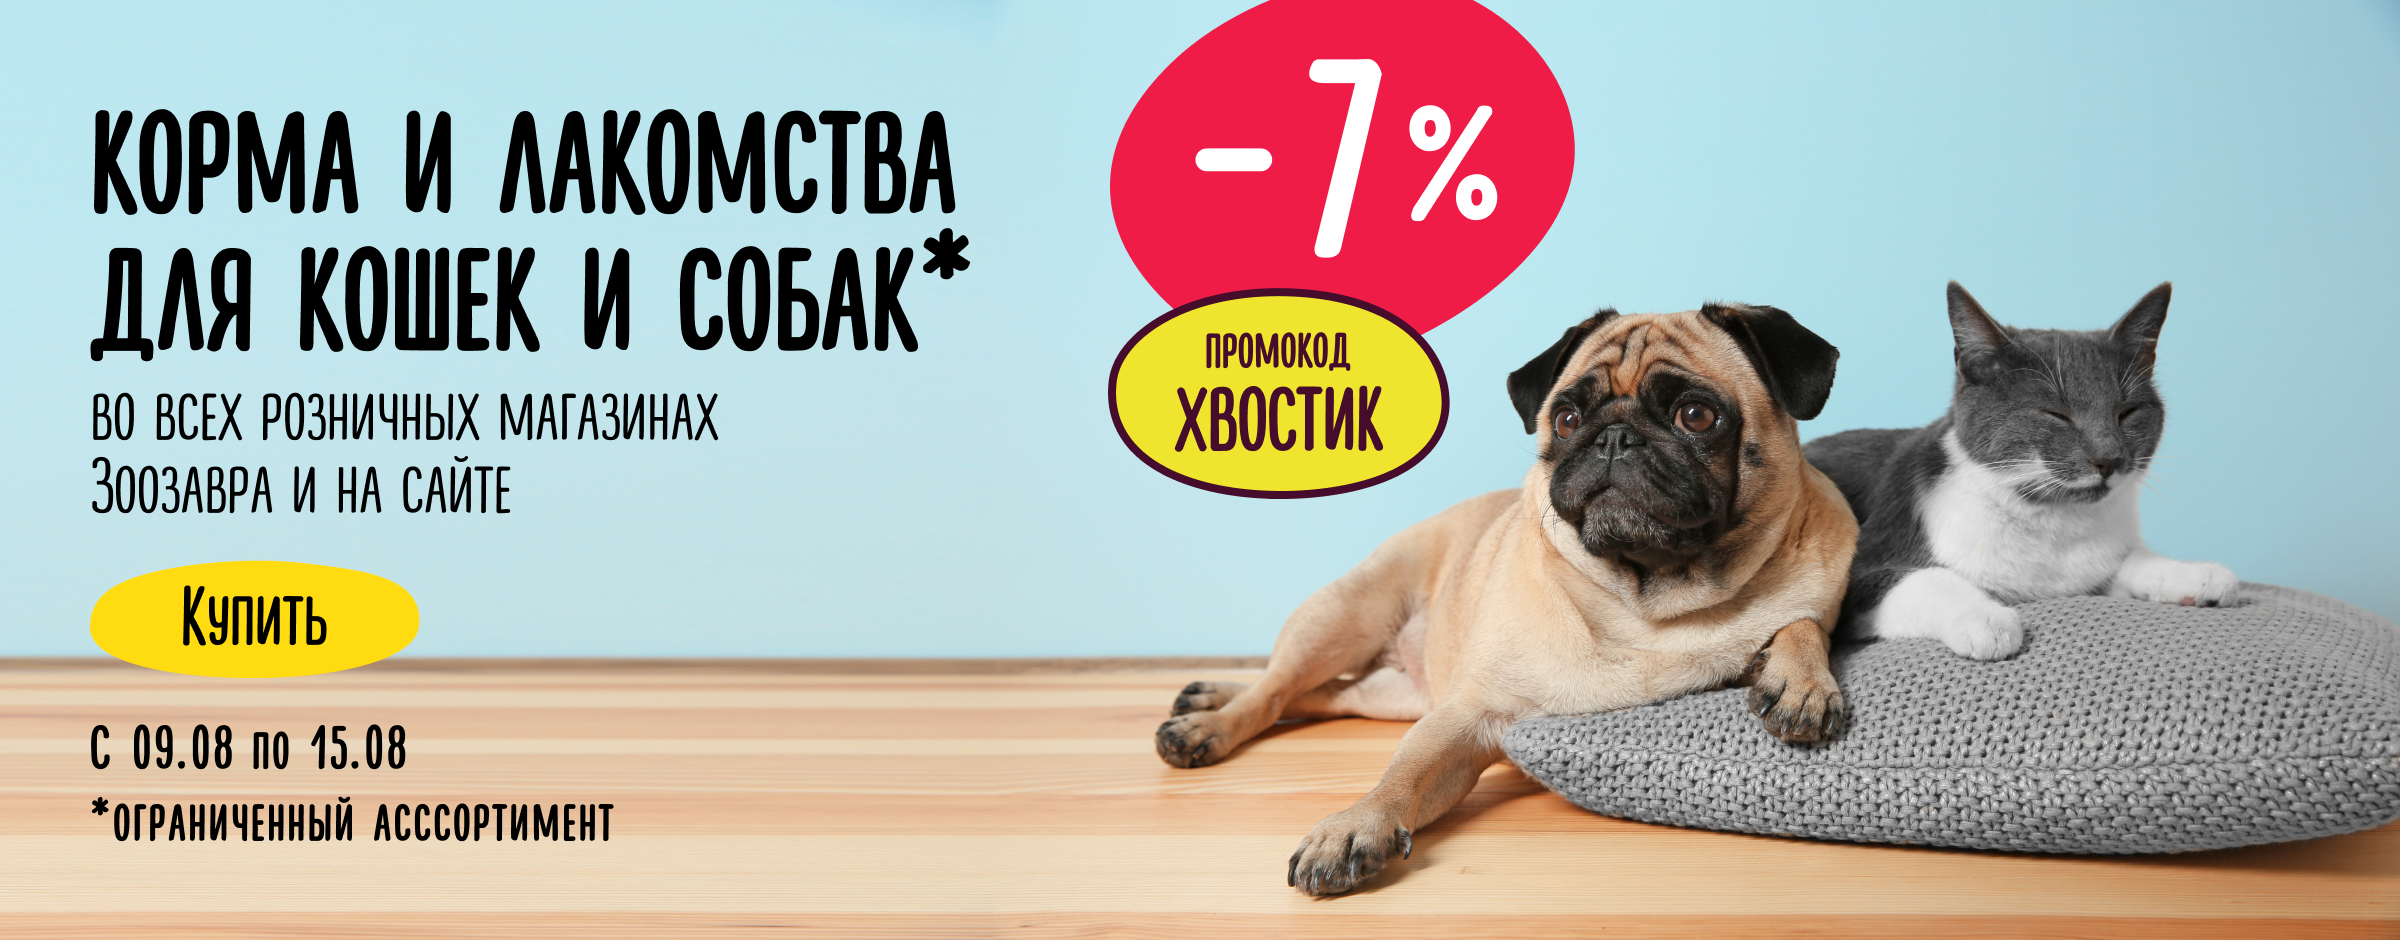 Доп. скидка 7% на корма и лакомства для кошек и собак ХВОСТИК статика